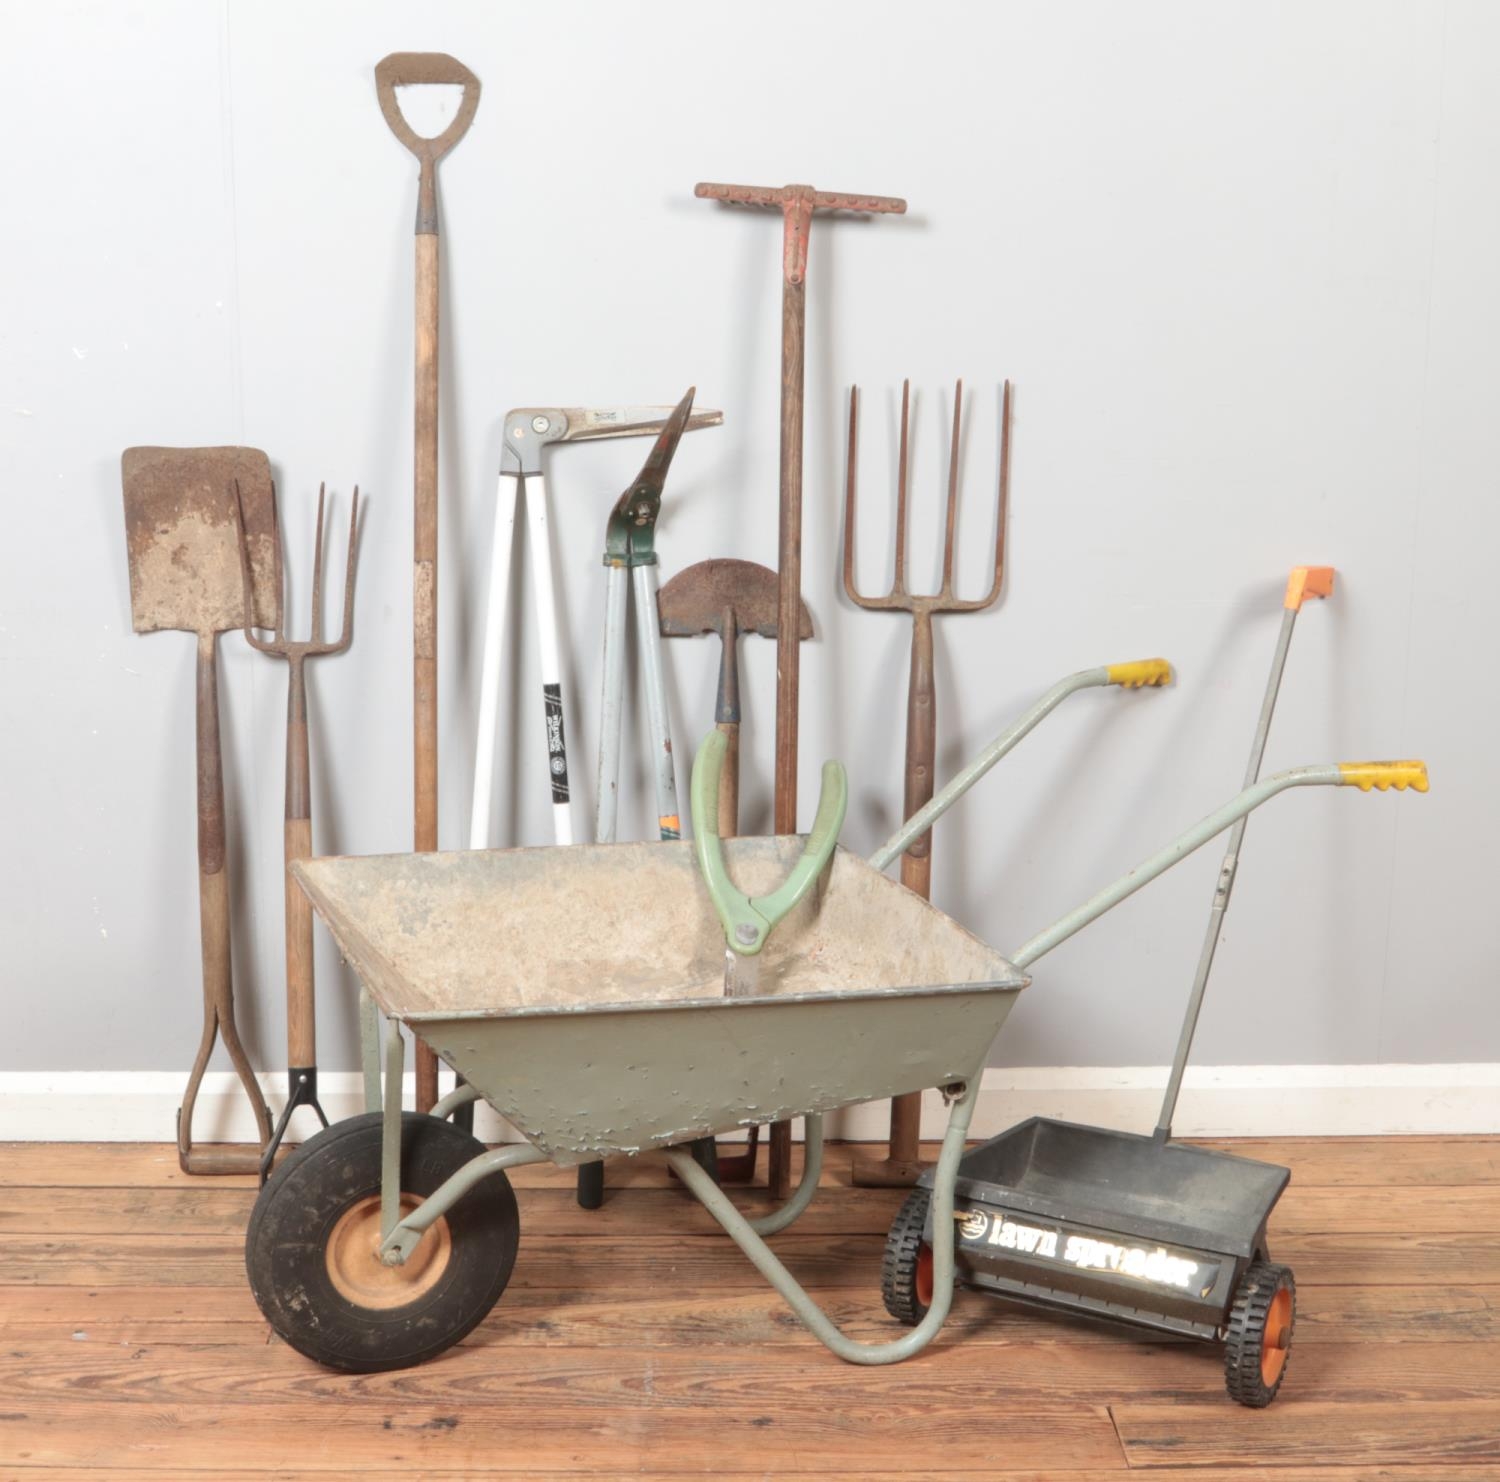 A collection of garden tools. Includes wheel barrow, lawn spreader, Wilkinson Sword etc.